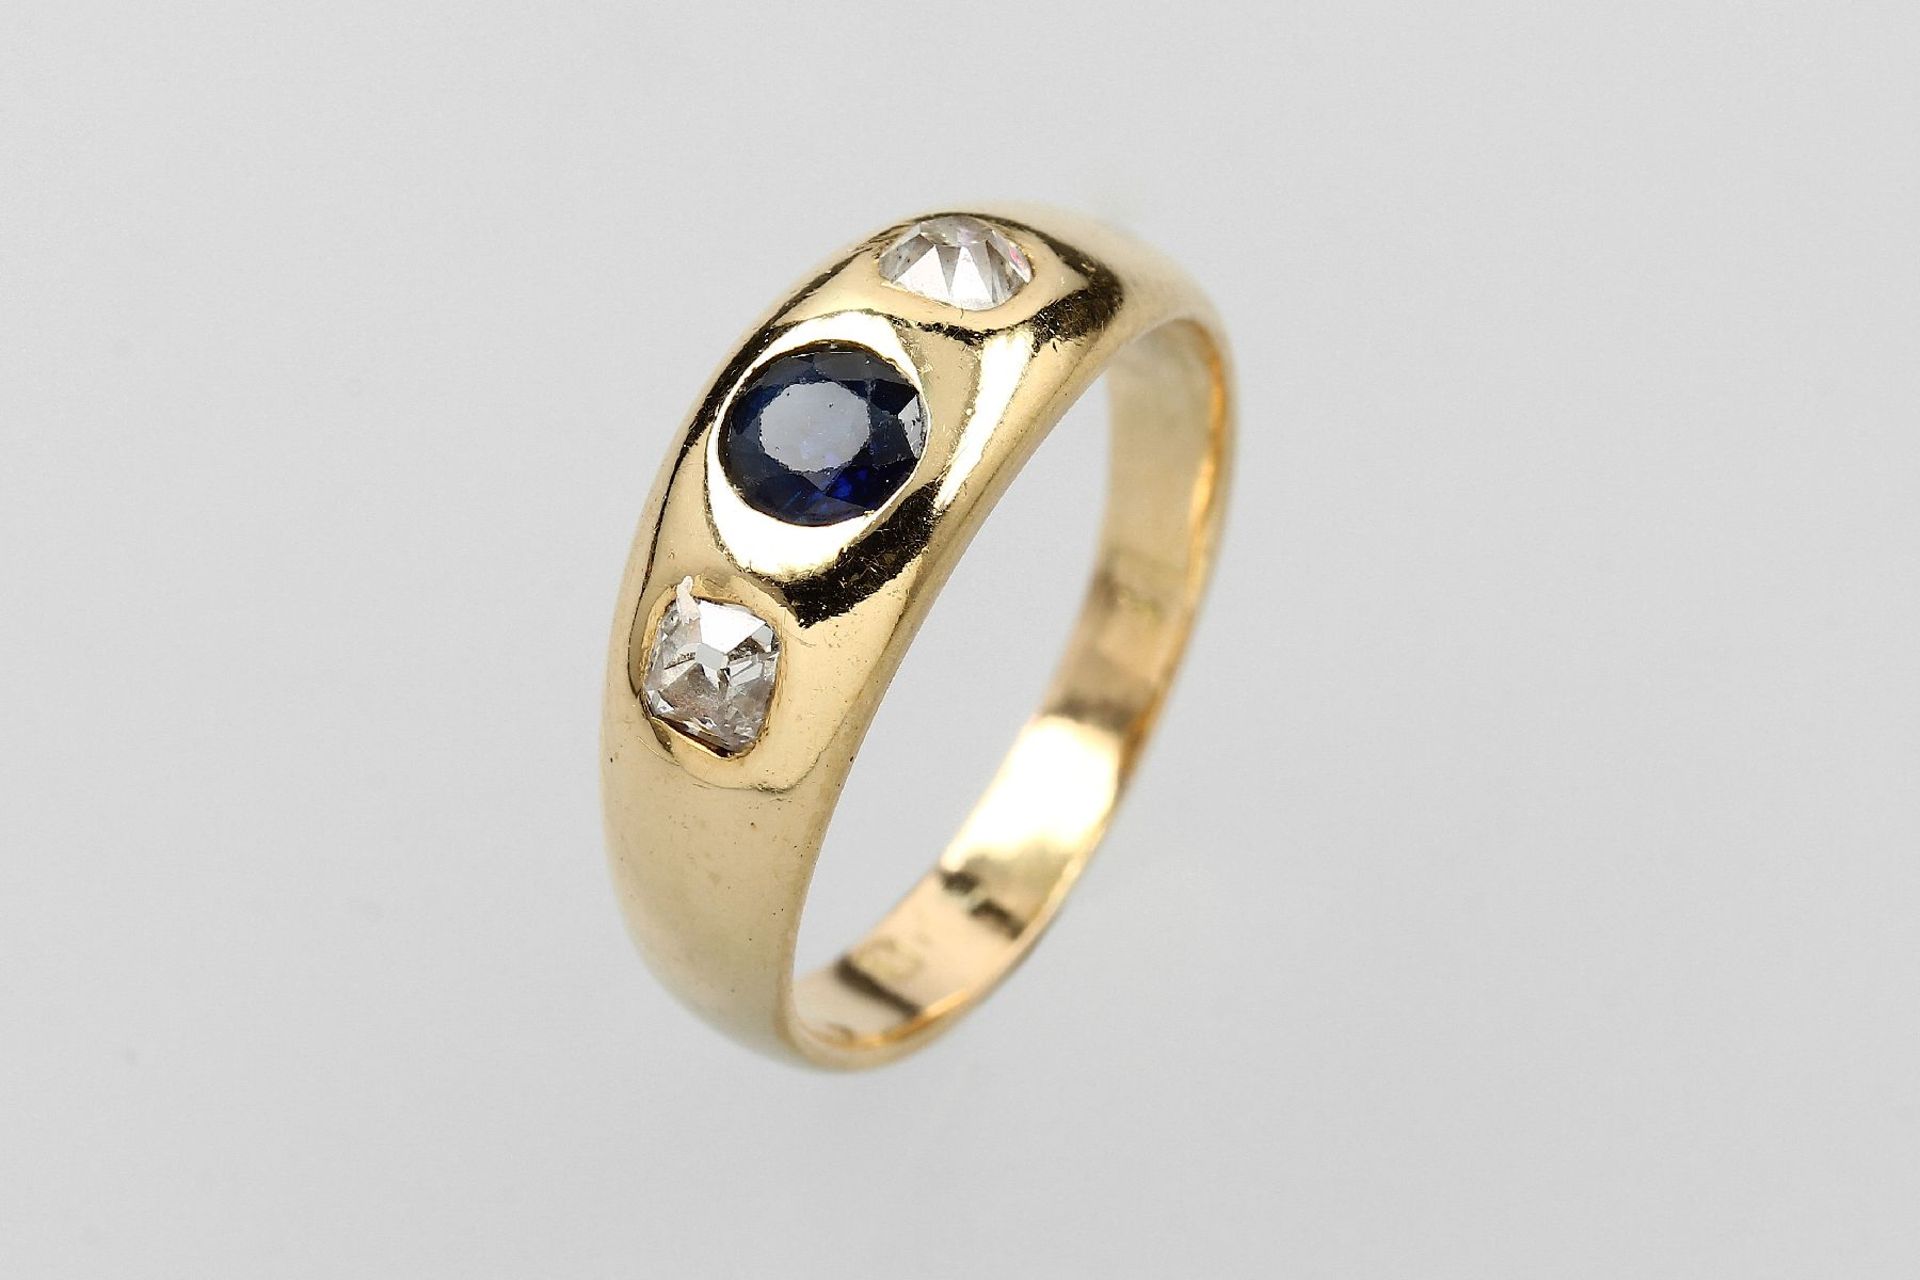 18 kt Gold Ring mit Saphir und Diamanten, GG 750/000, mittig rund facett. Saphir ca. 0.25 ct, 2